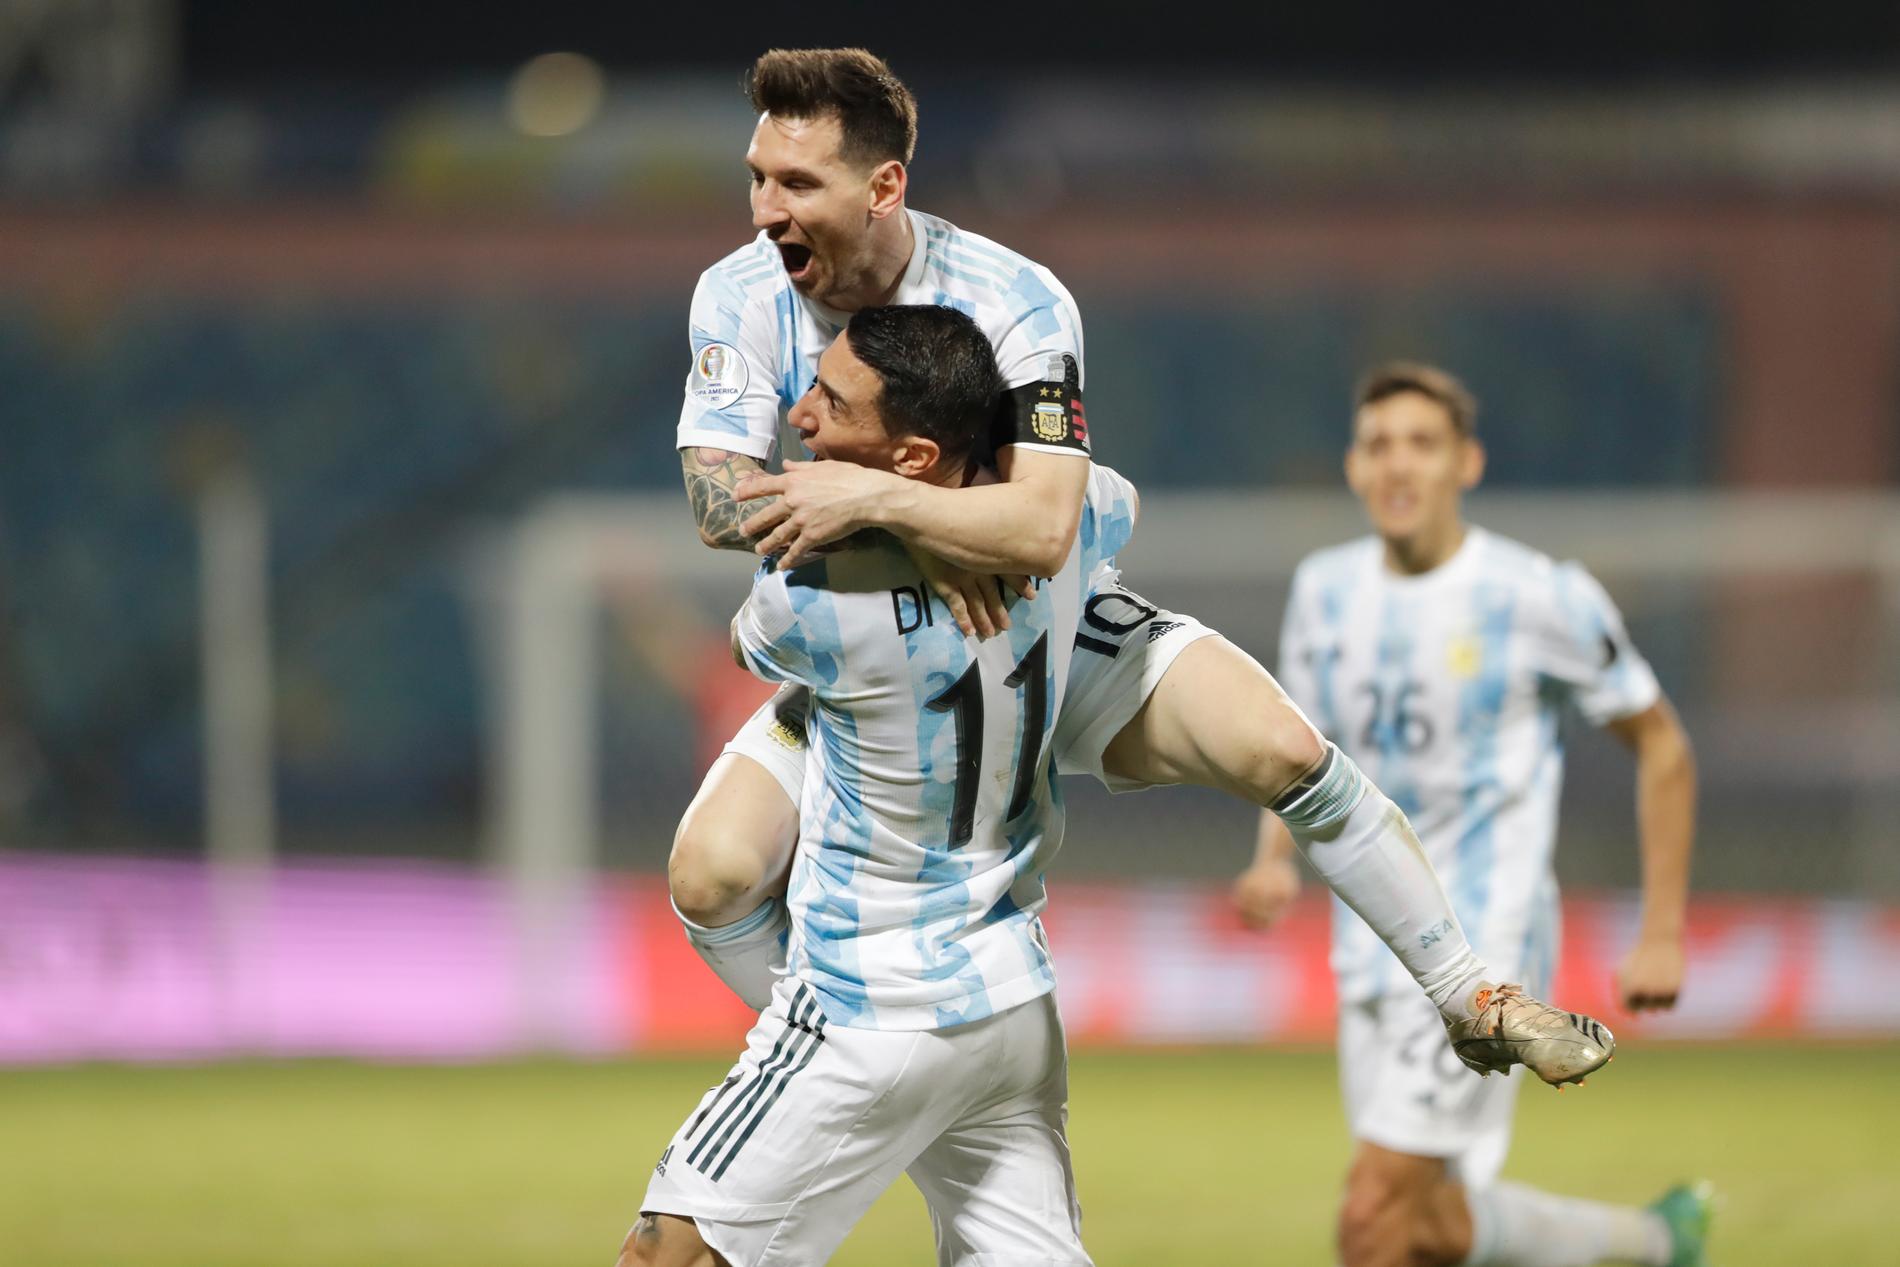 Lionel Messi firar sitt frisparksmål med lagkamraten Ángel Di María.